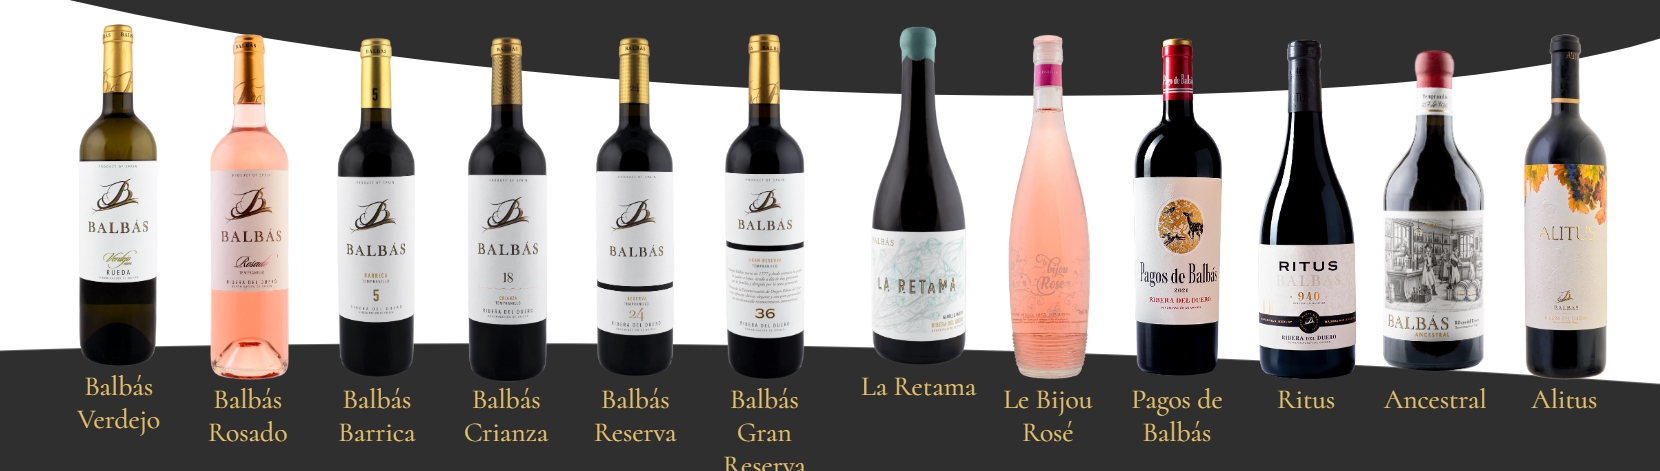 Bodegas Balbás: Tradición vinícola en Ribera del Duero 1